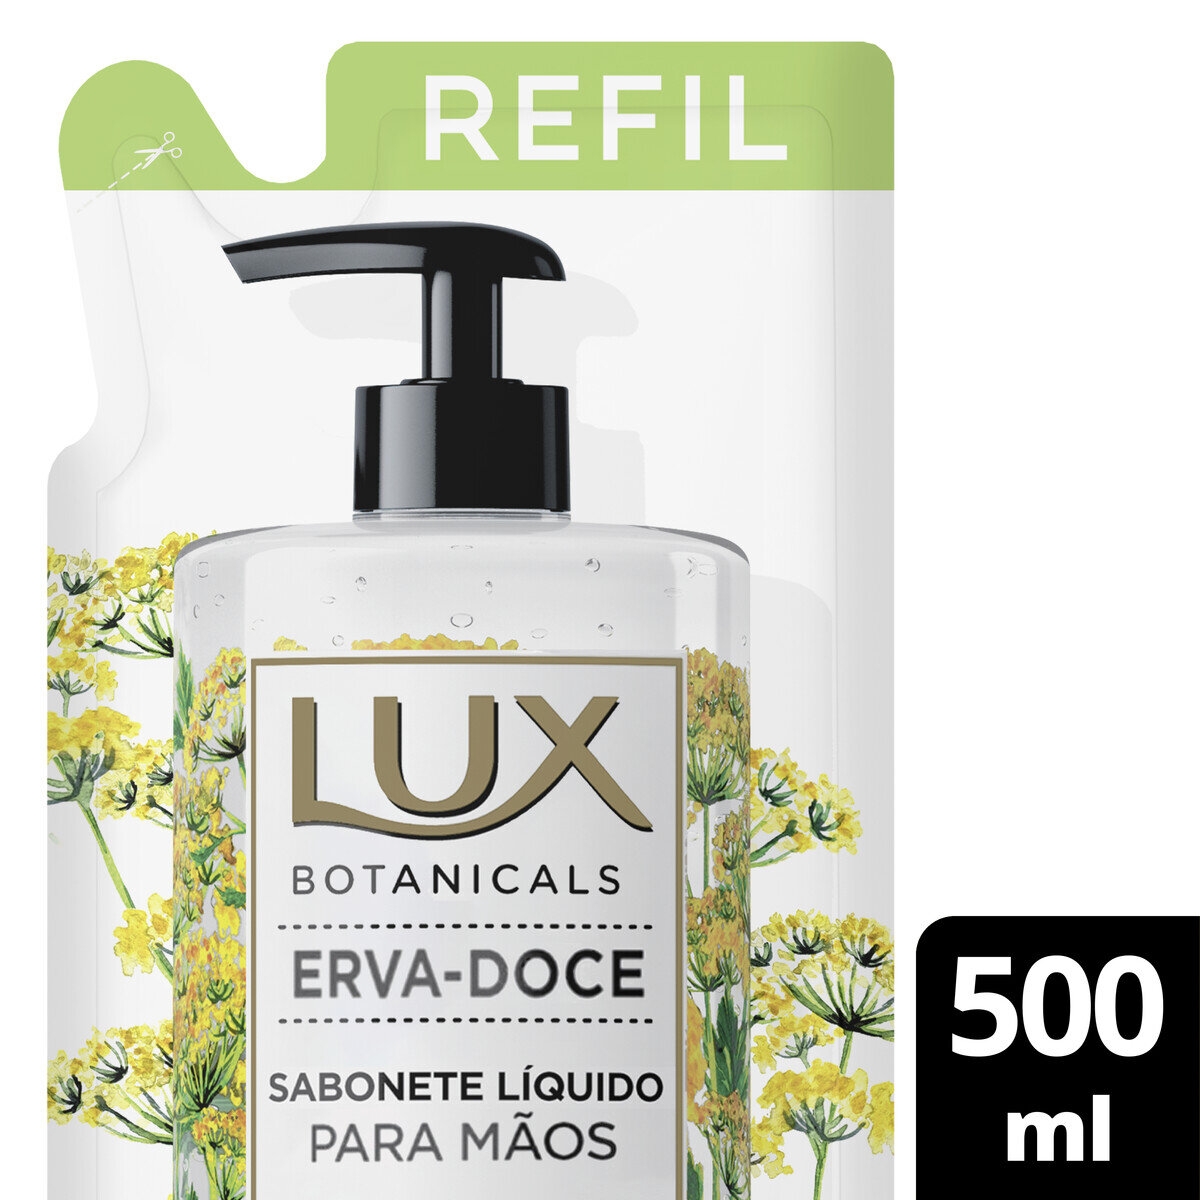 Refil Sabonete Líquido para Mãos Lux Botanicals Erva Doce 500ml 500ml